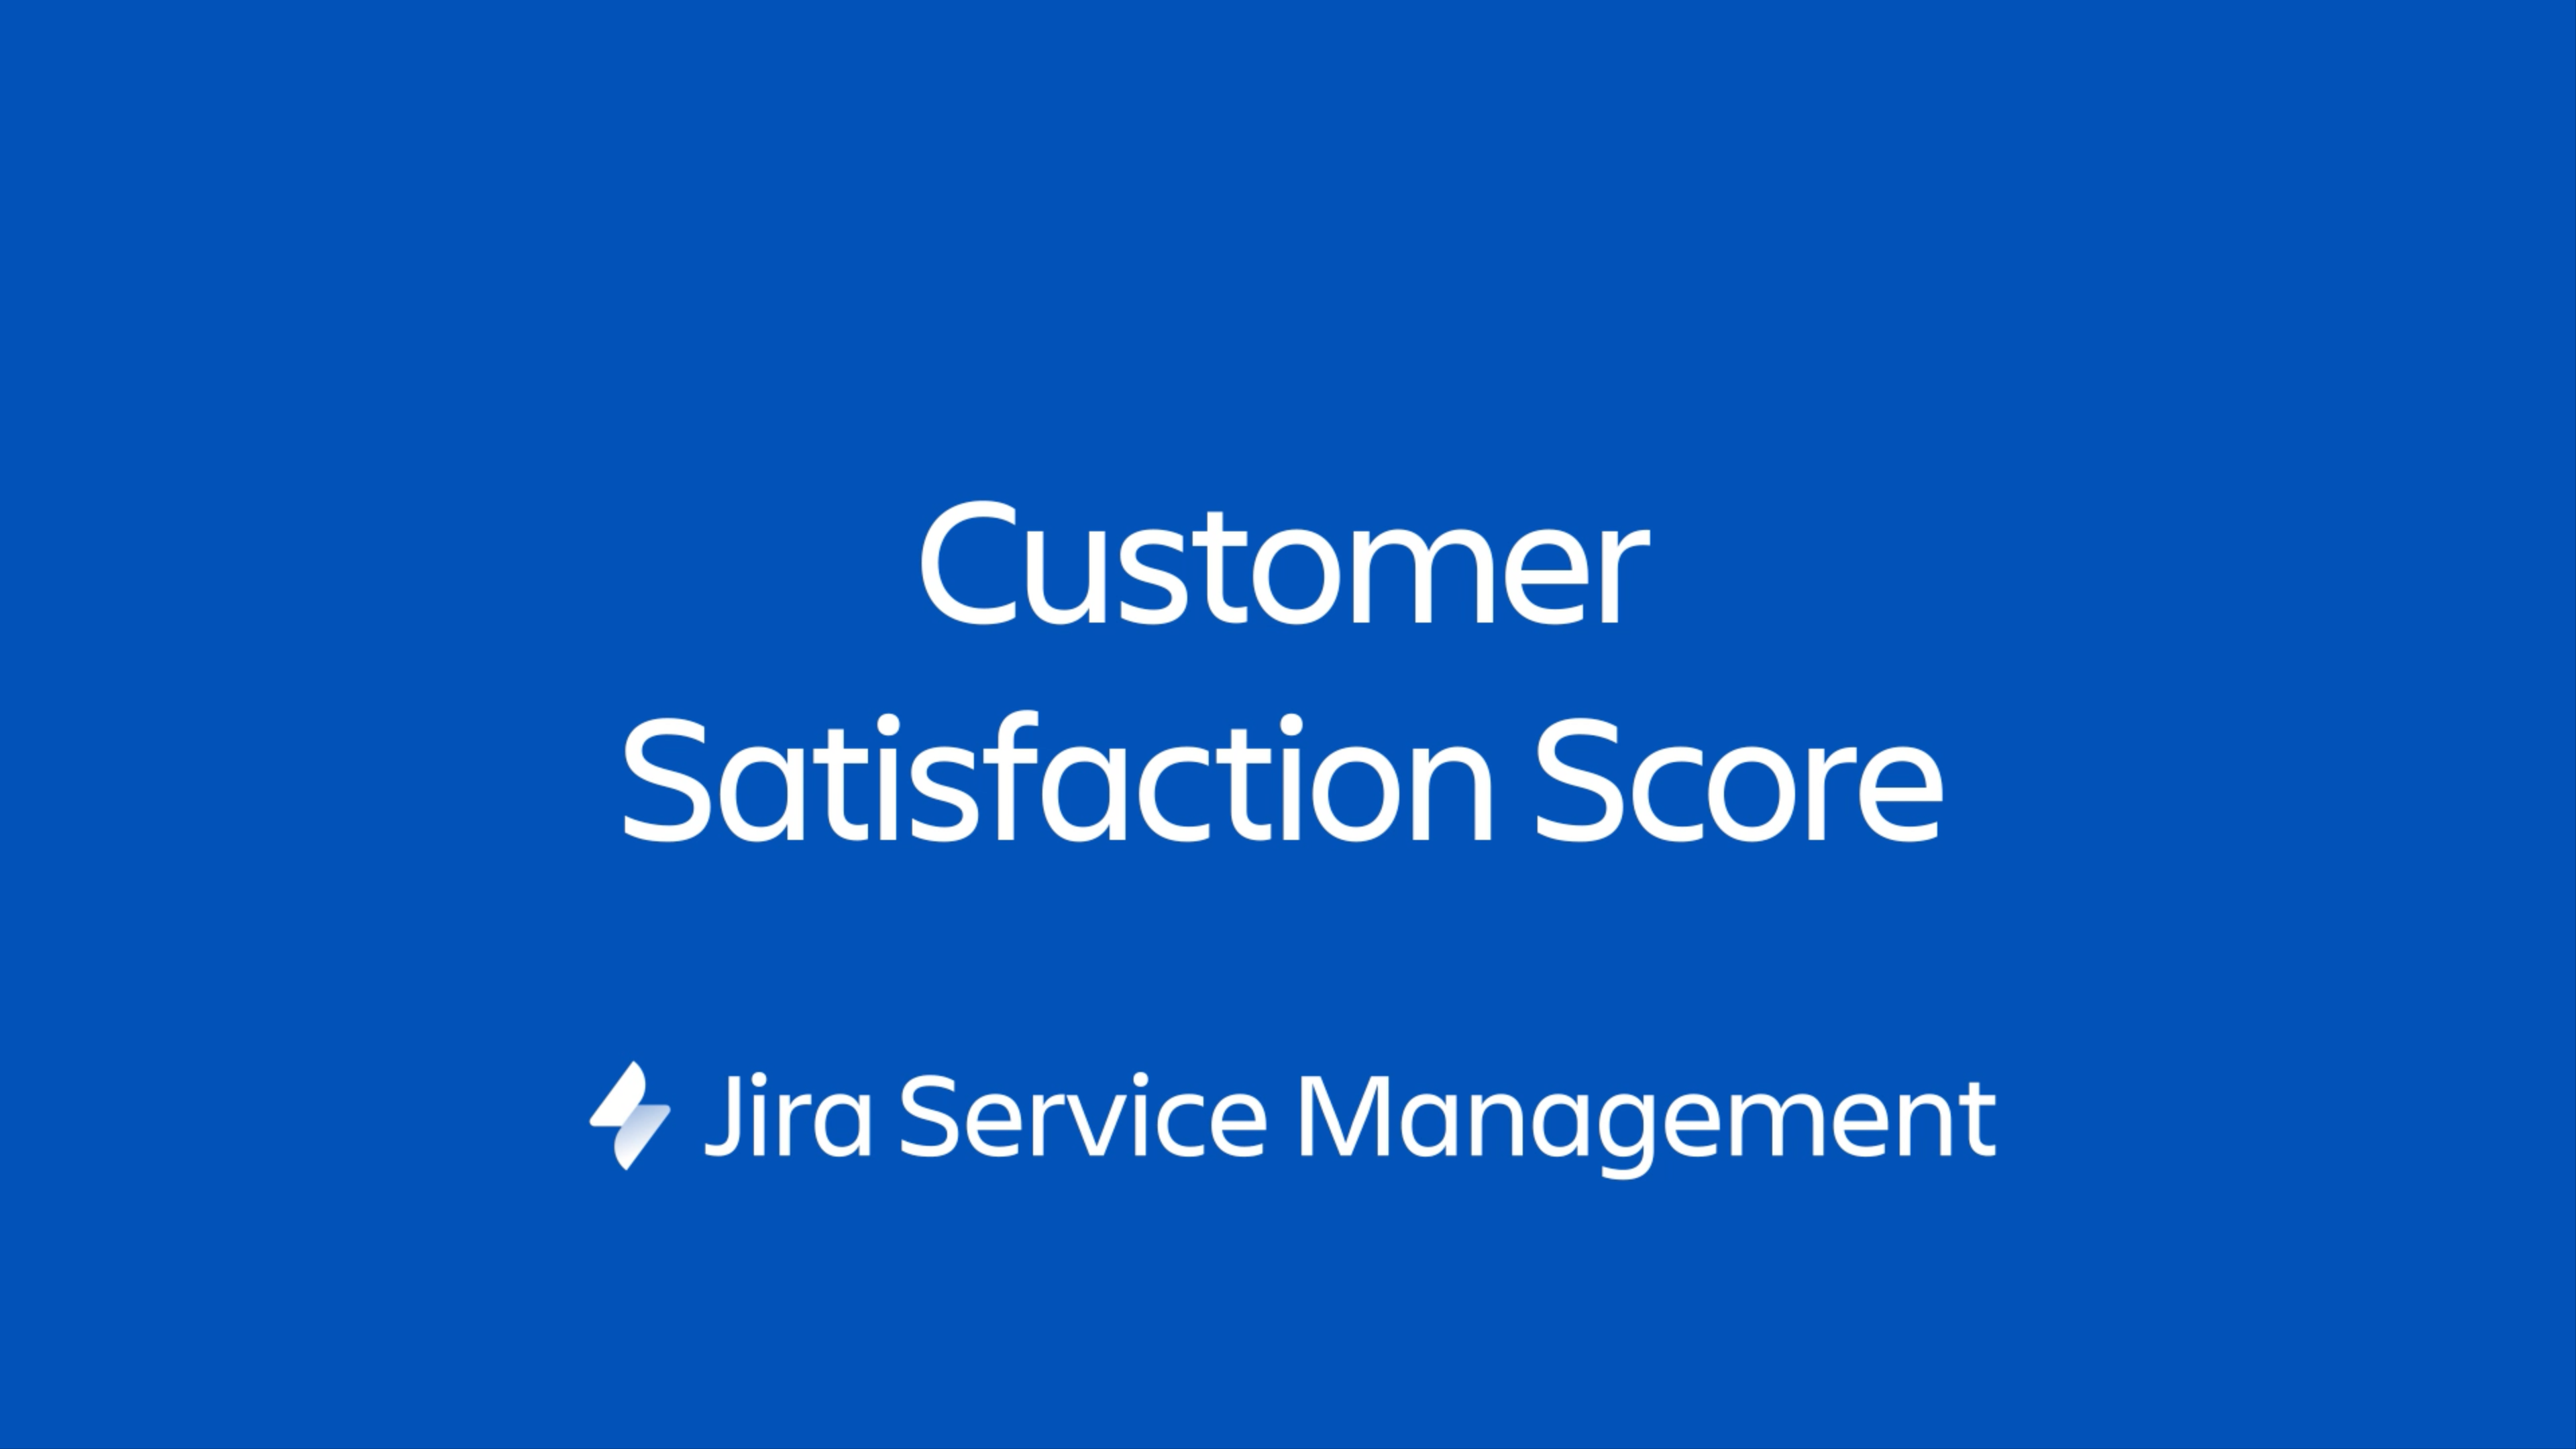 A Jira Service Management vezérlő egy mini portál, amelyet bármelyik weboldalra beágyazhatsz, amit te kezelsz.